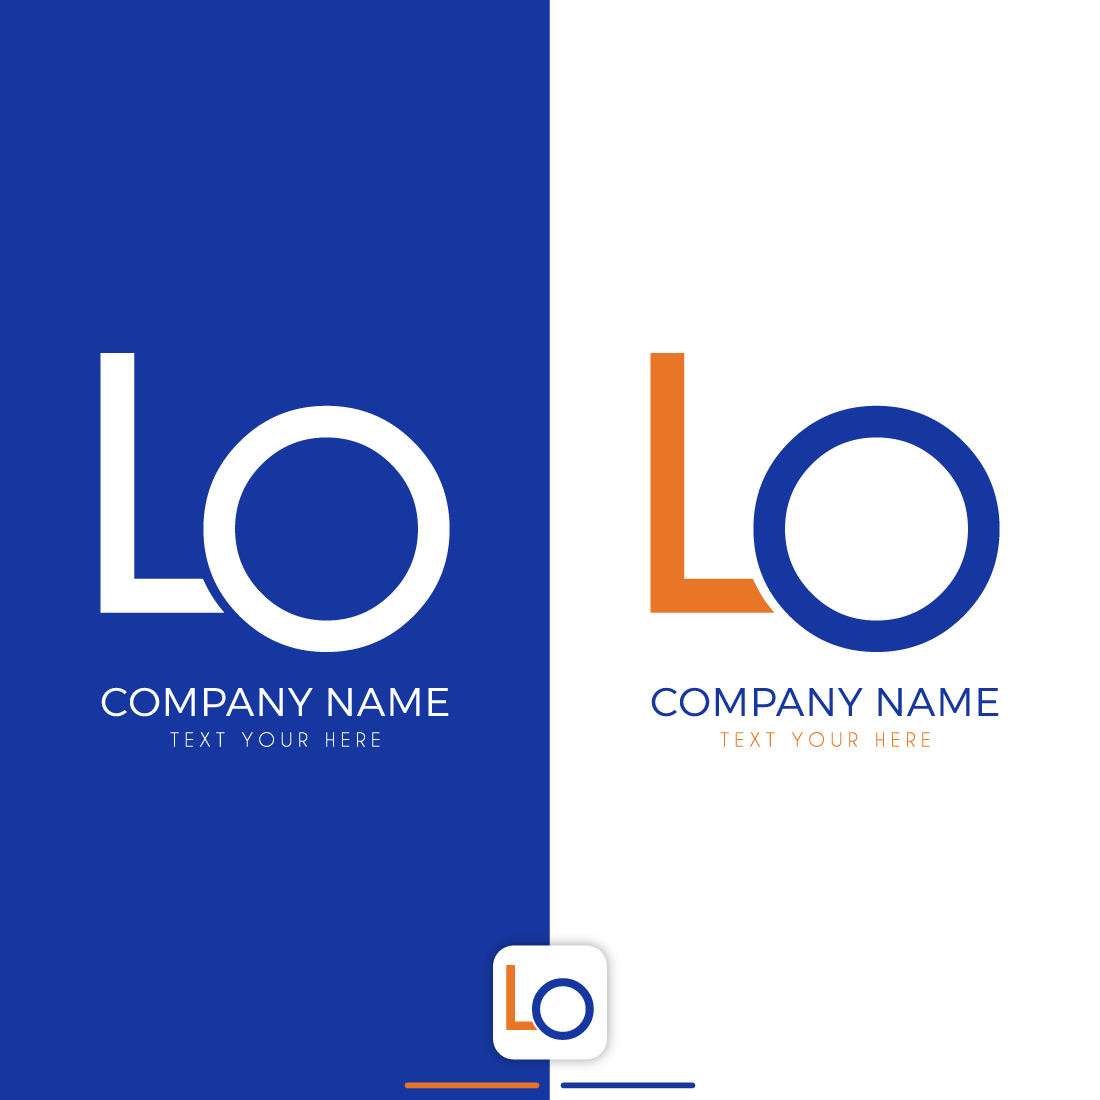 LO Letter Logo Design main cover.